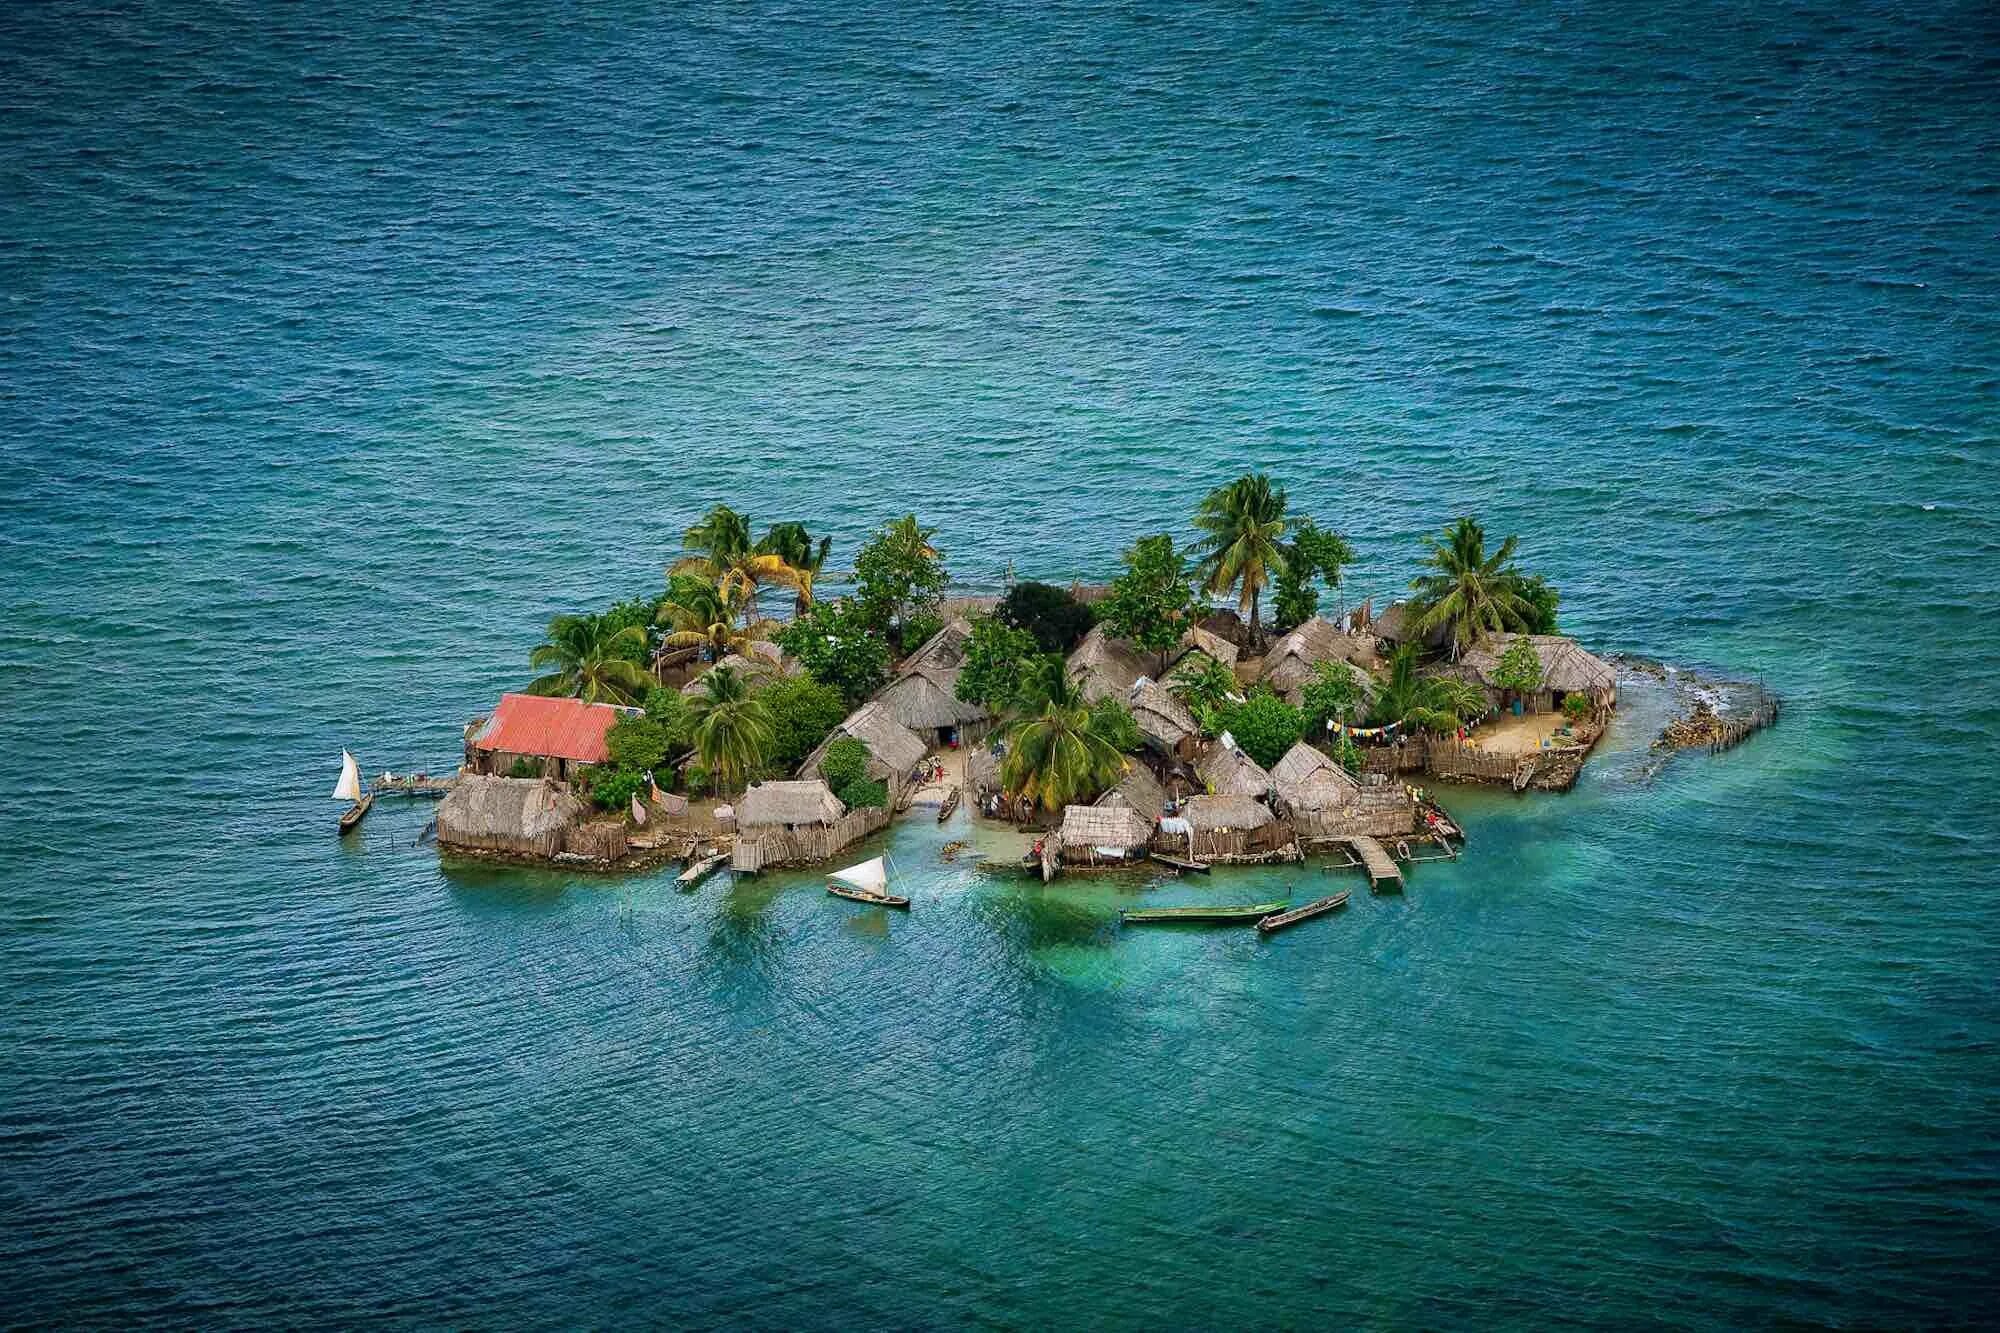 Сане остров. Острова Сан-Блас, Панама. Архипелаг Сан-Блас. Группа островов Сан Блас в Панаме. Коморские острова (архипелаг).